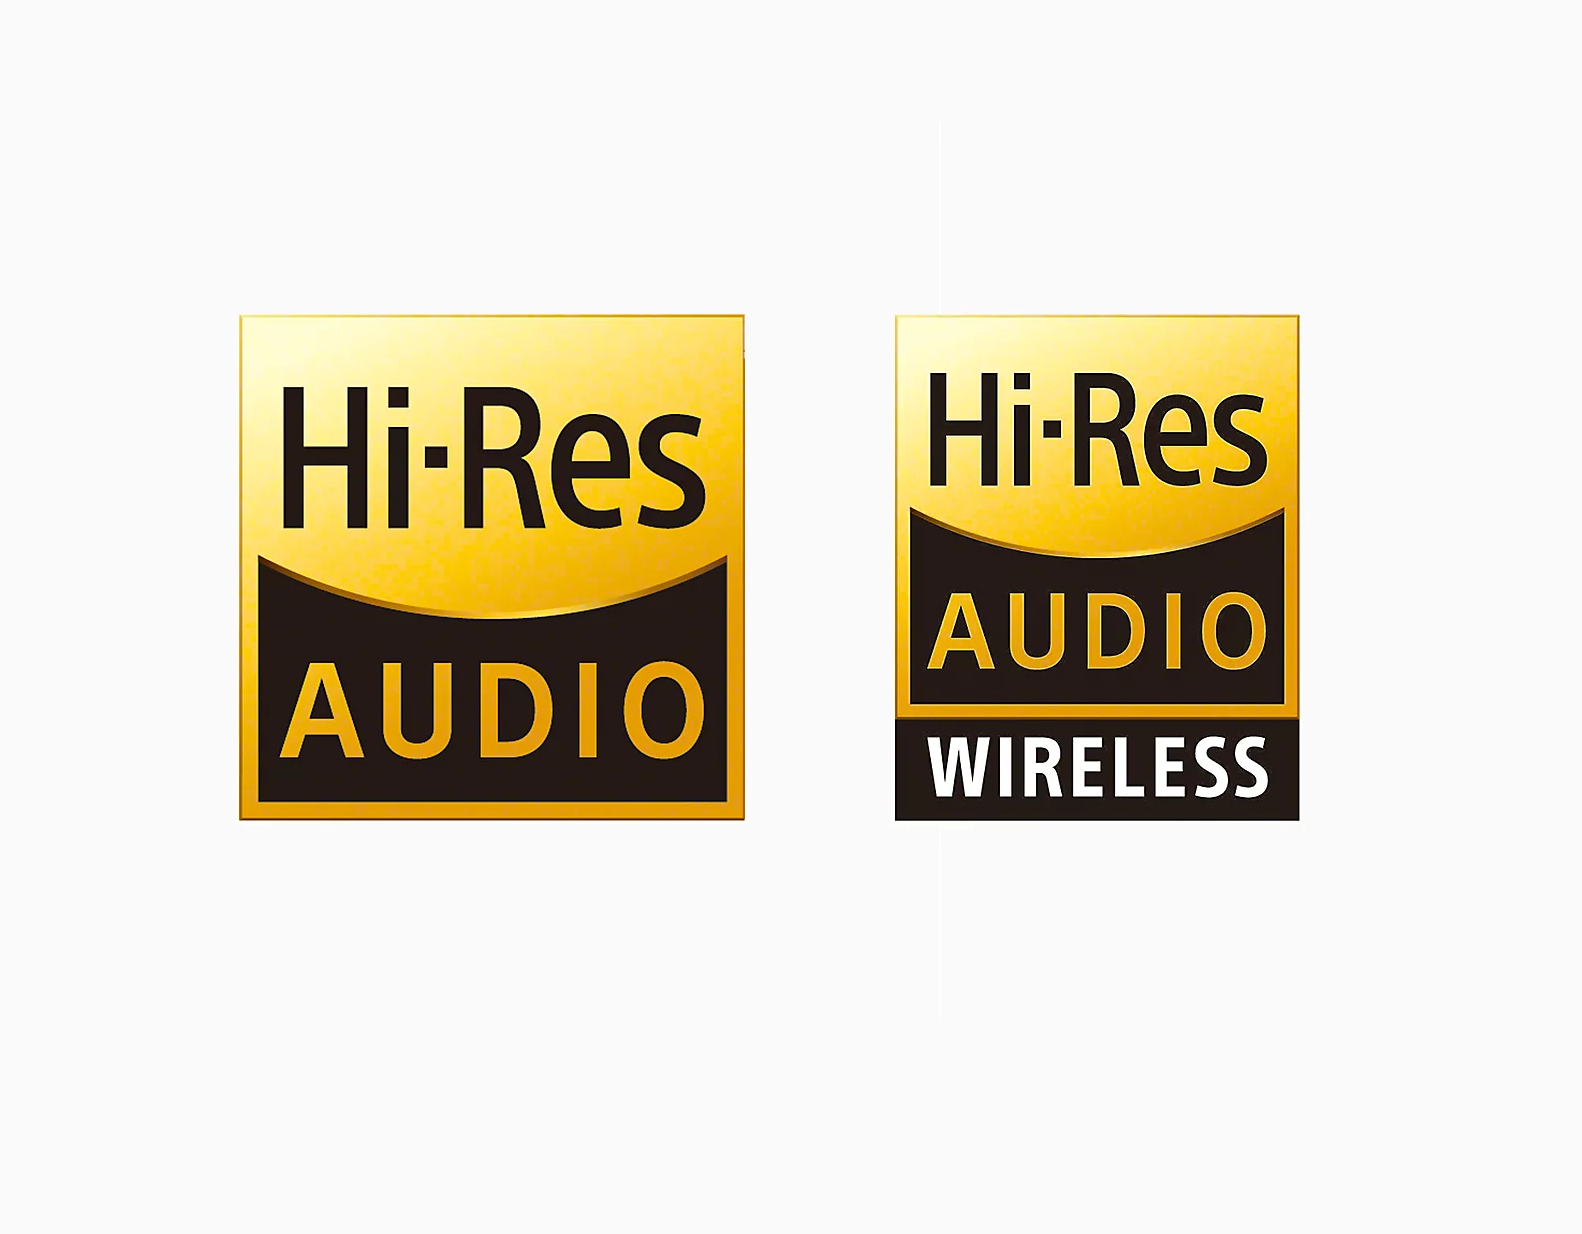 Hi-res audio and Hi-res audio wireless. Photo: Sony